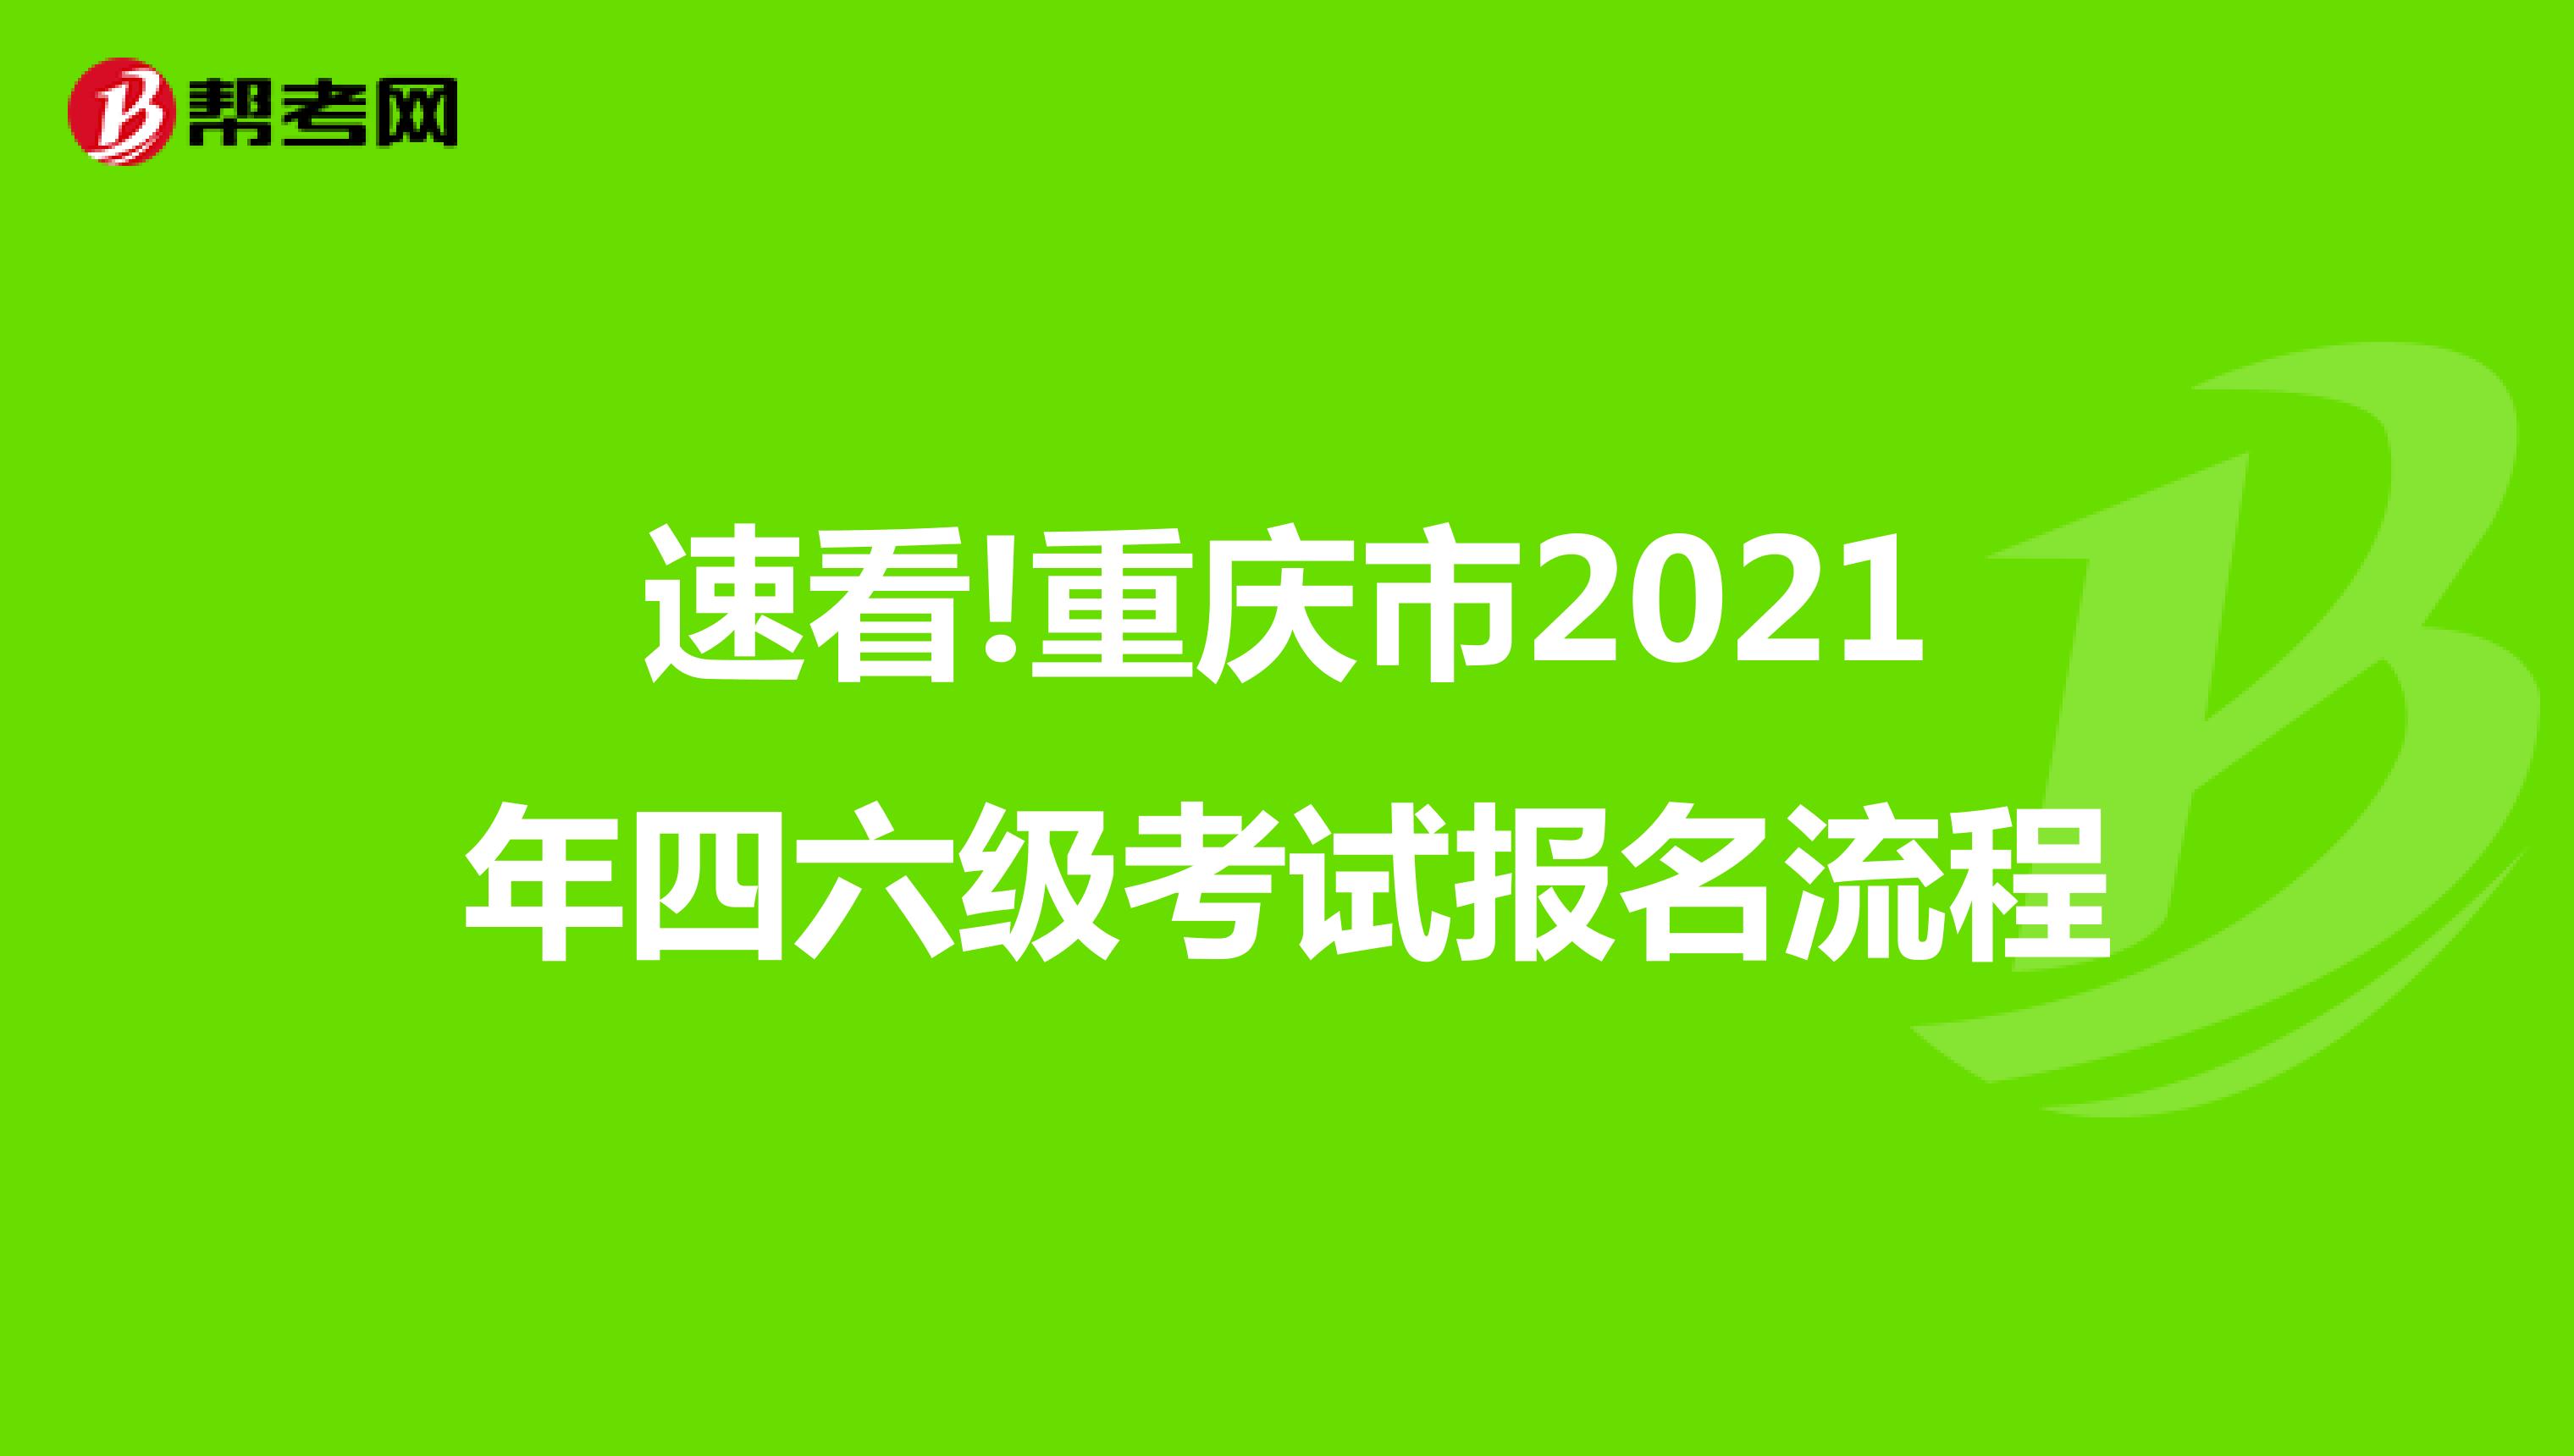 速看!重庆市2021年四六级考试报名流程